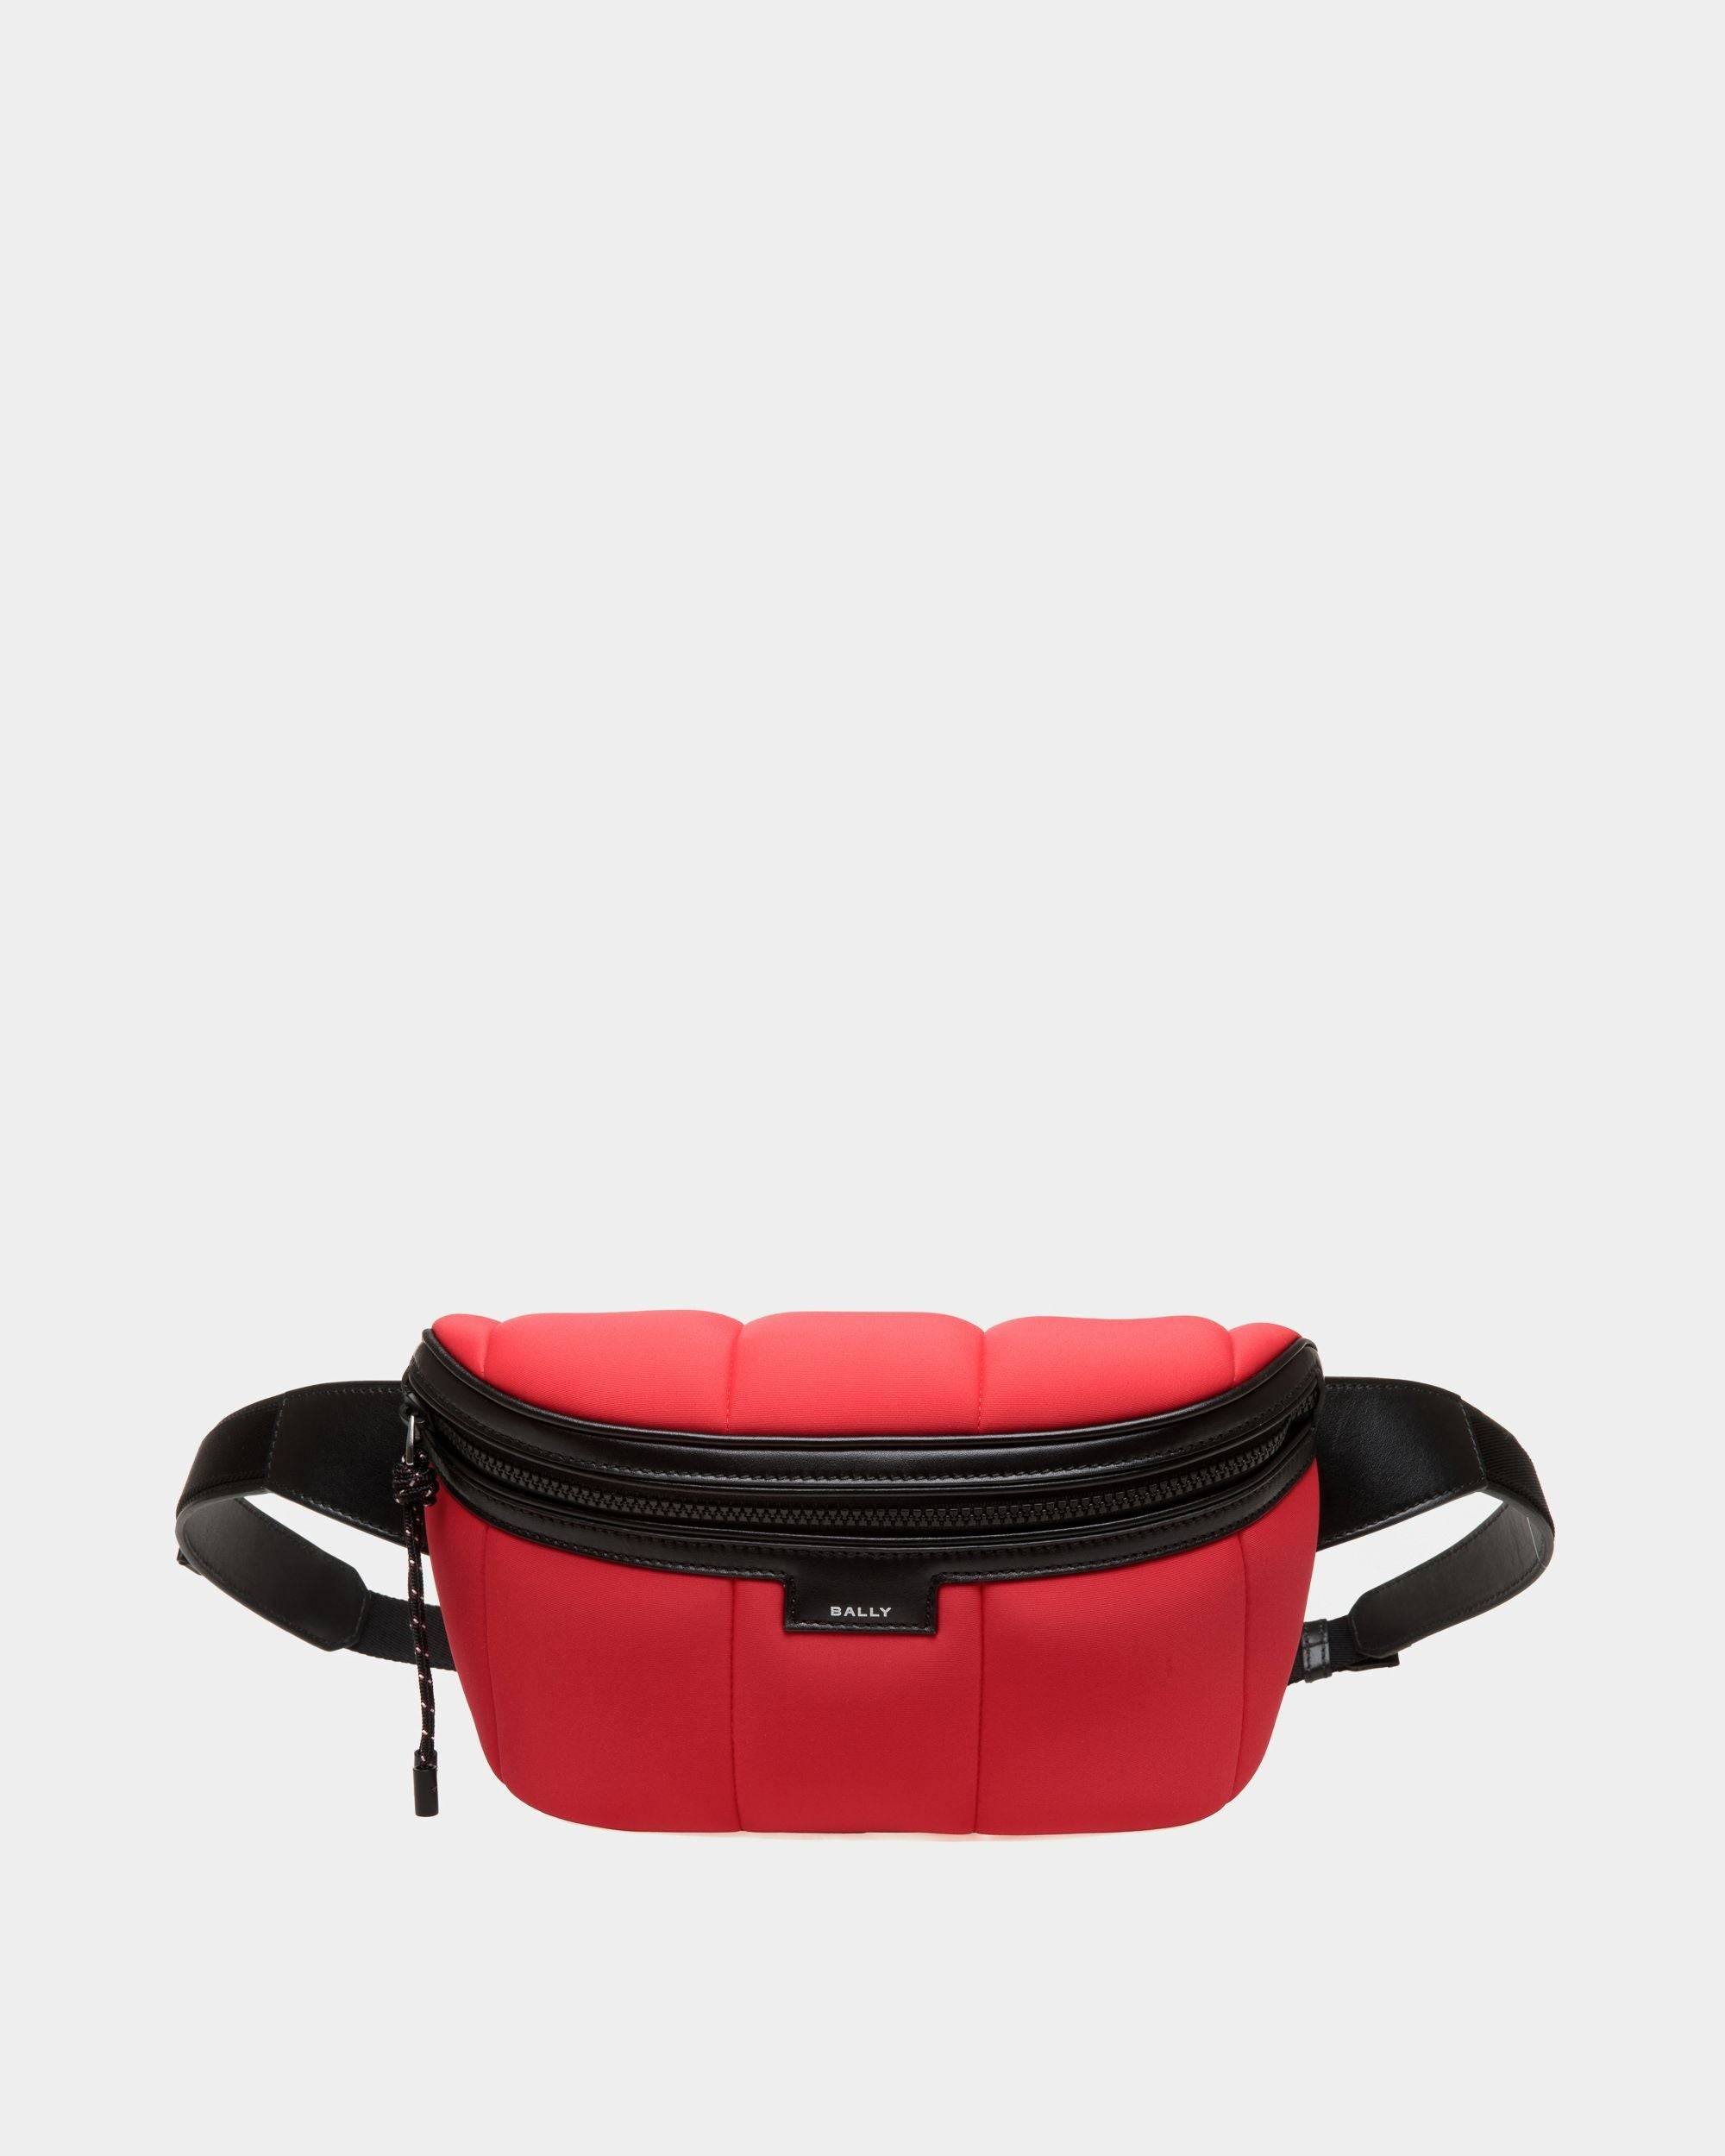 Men's Mountain Belt Bag In Red Neoprene | Bally | Still Life Front